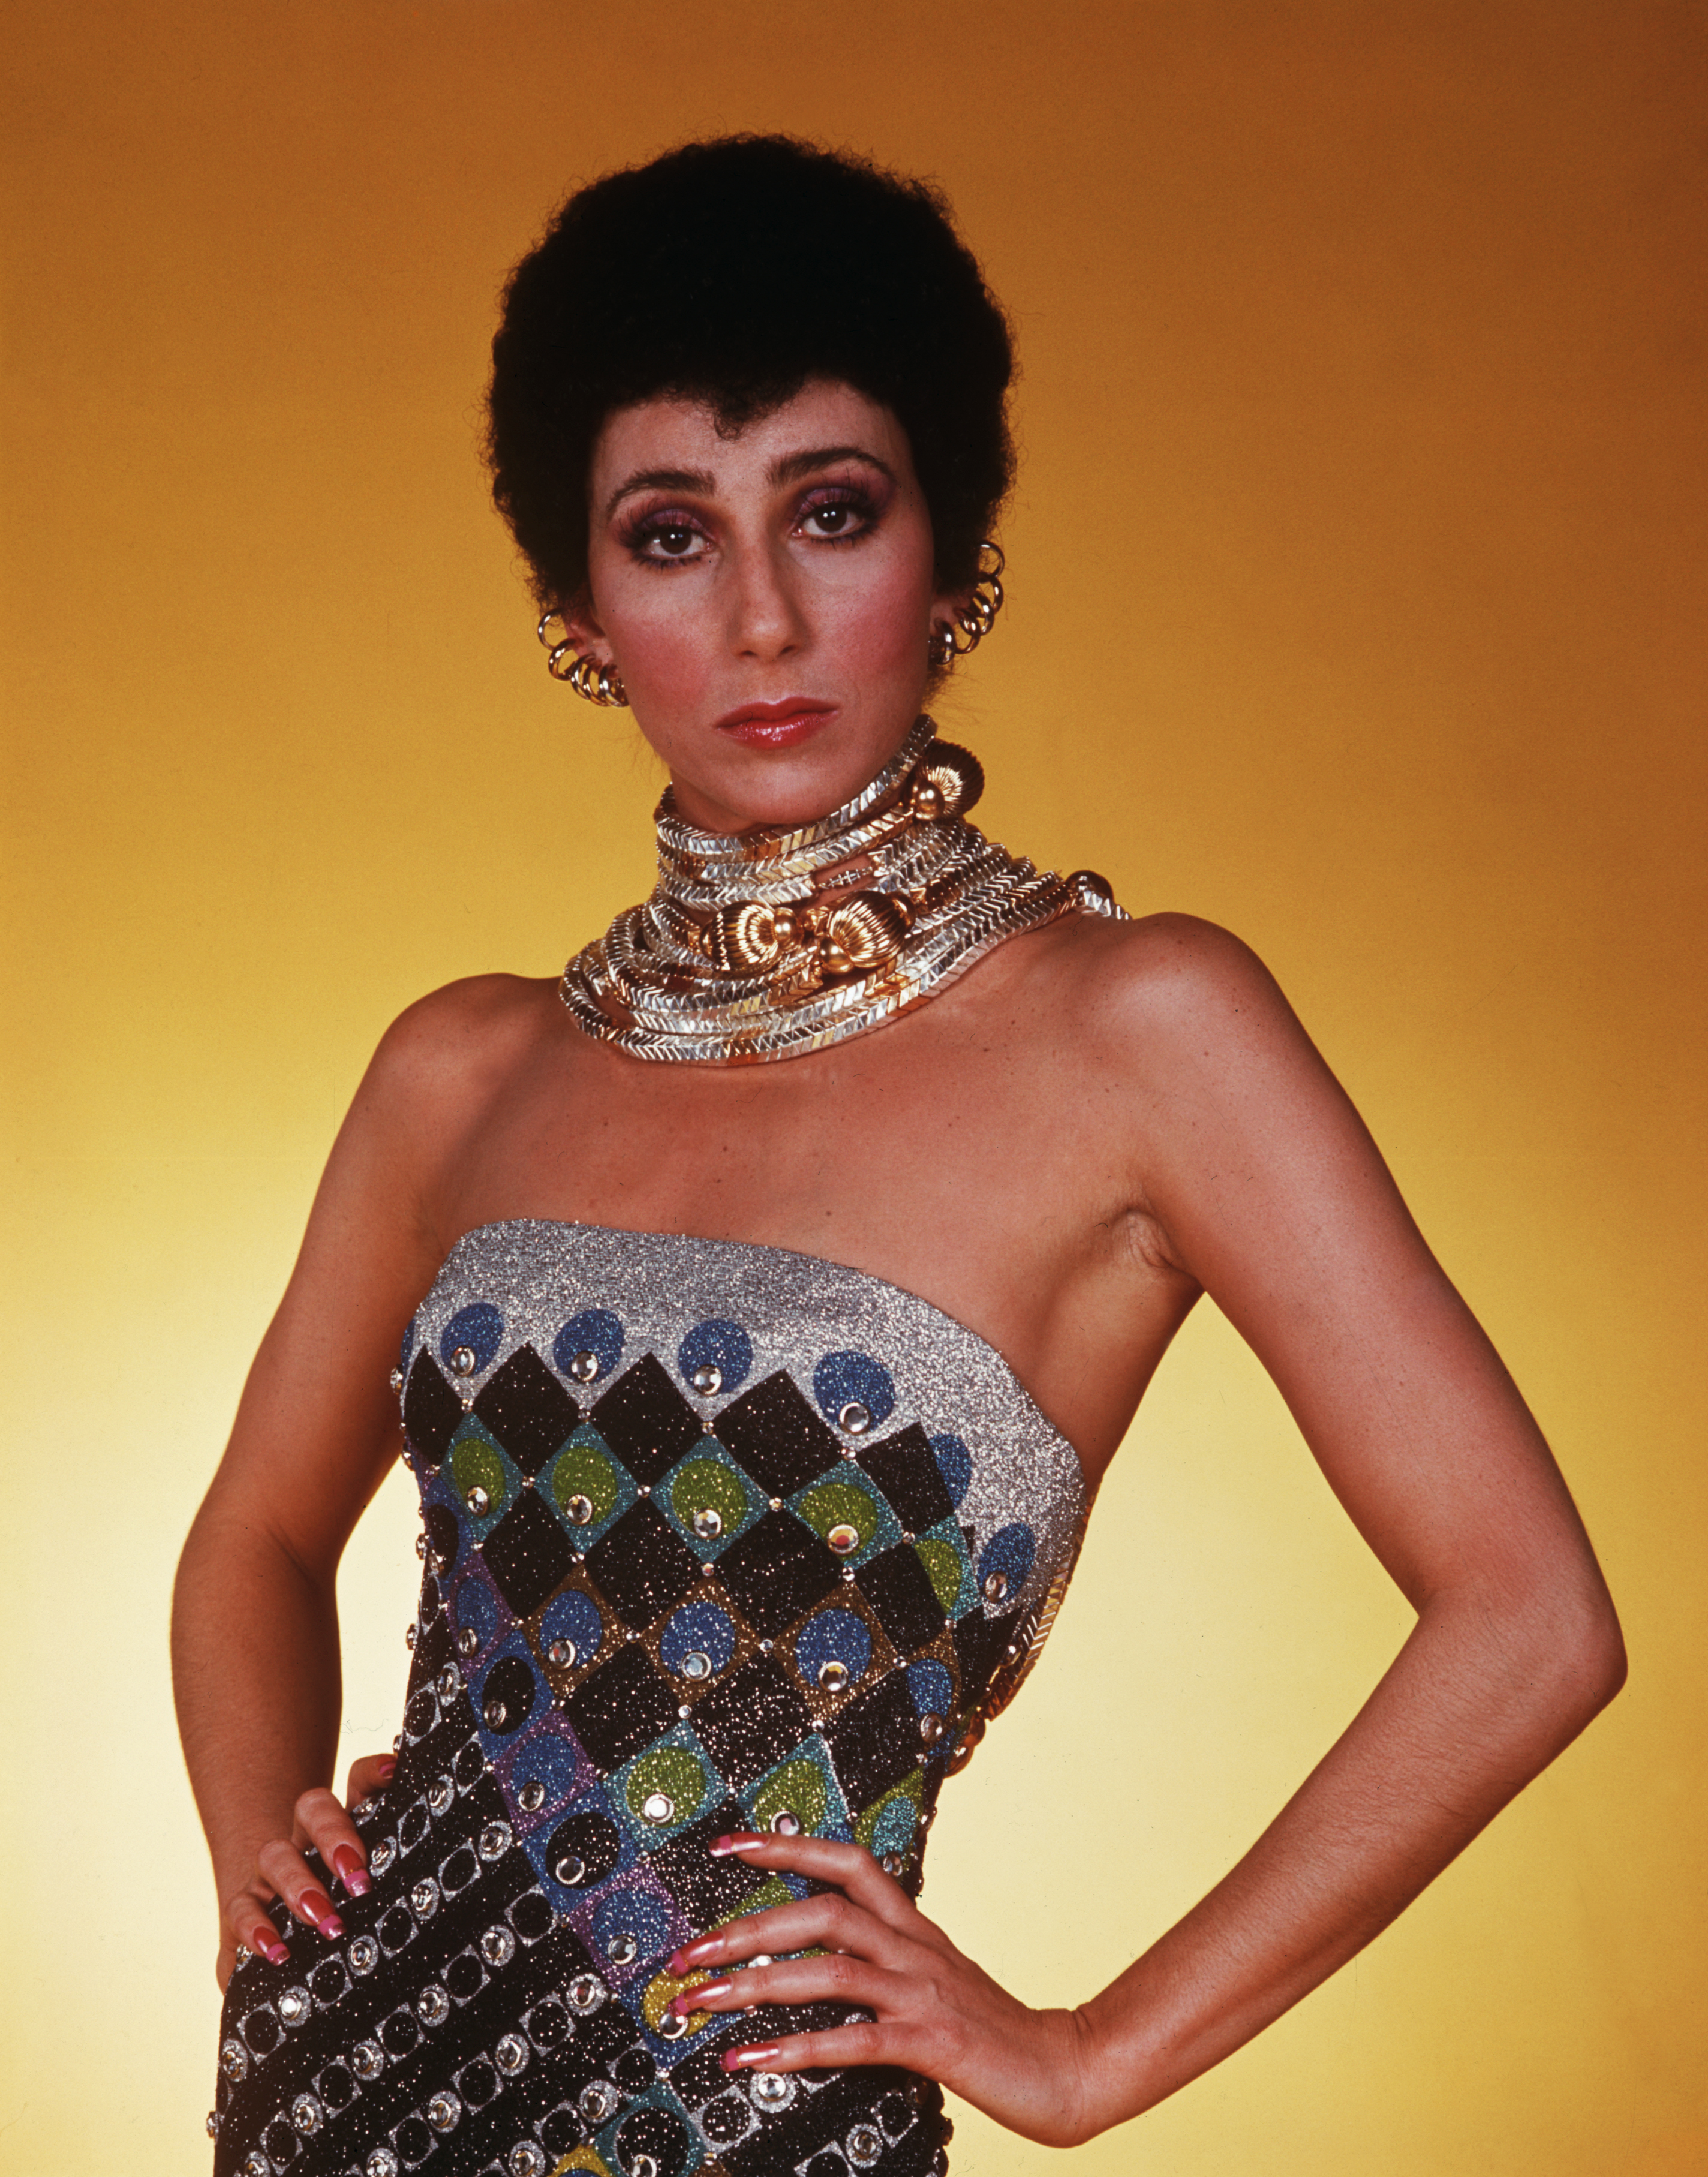 Cher dans son émission de télévision, "The Sonny and Cher Comedy Hour" en 1975 | Source : Getty Images